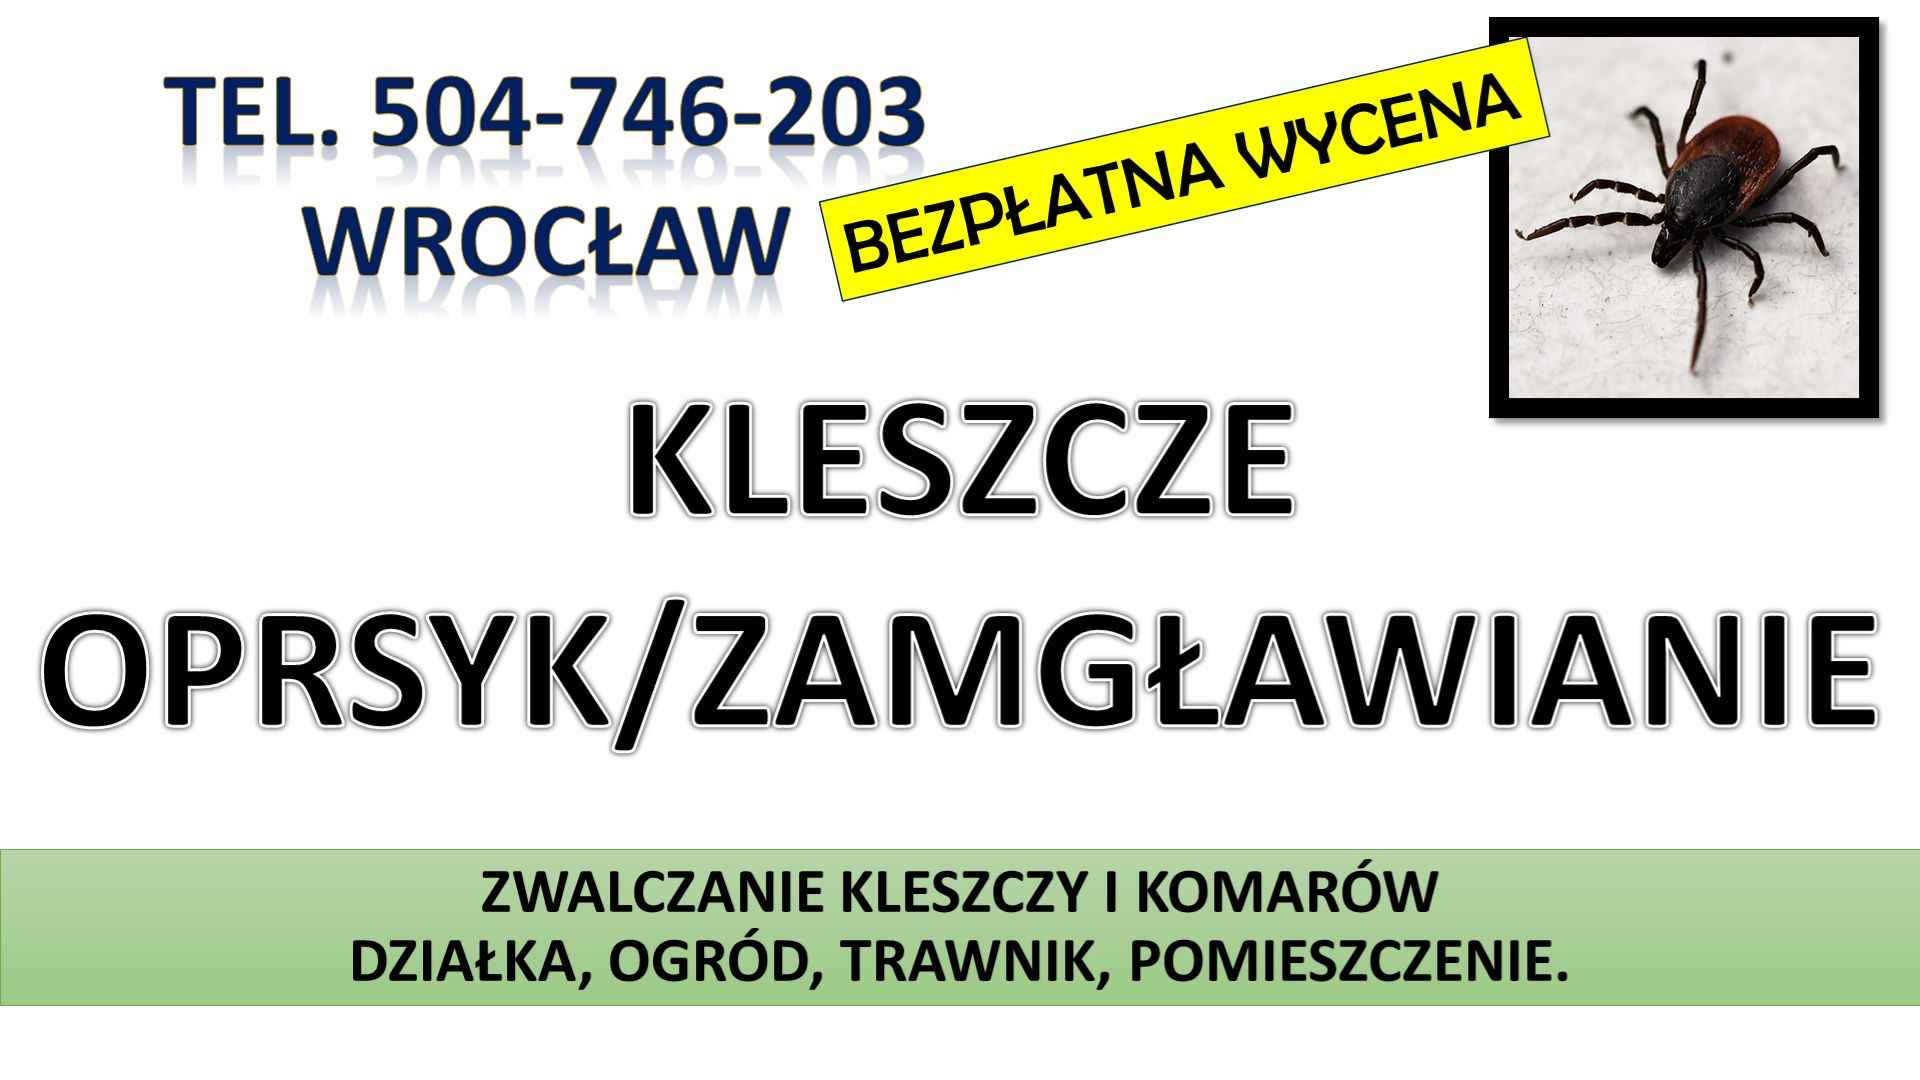 Zwalczanie kleszczy, cena, Wrocław, t504-746-203, Opryski, likwidacja. Psie Pole - zdjęcie 6